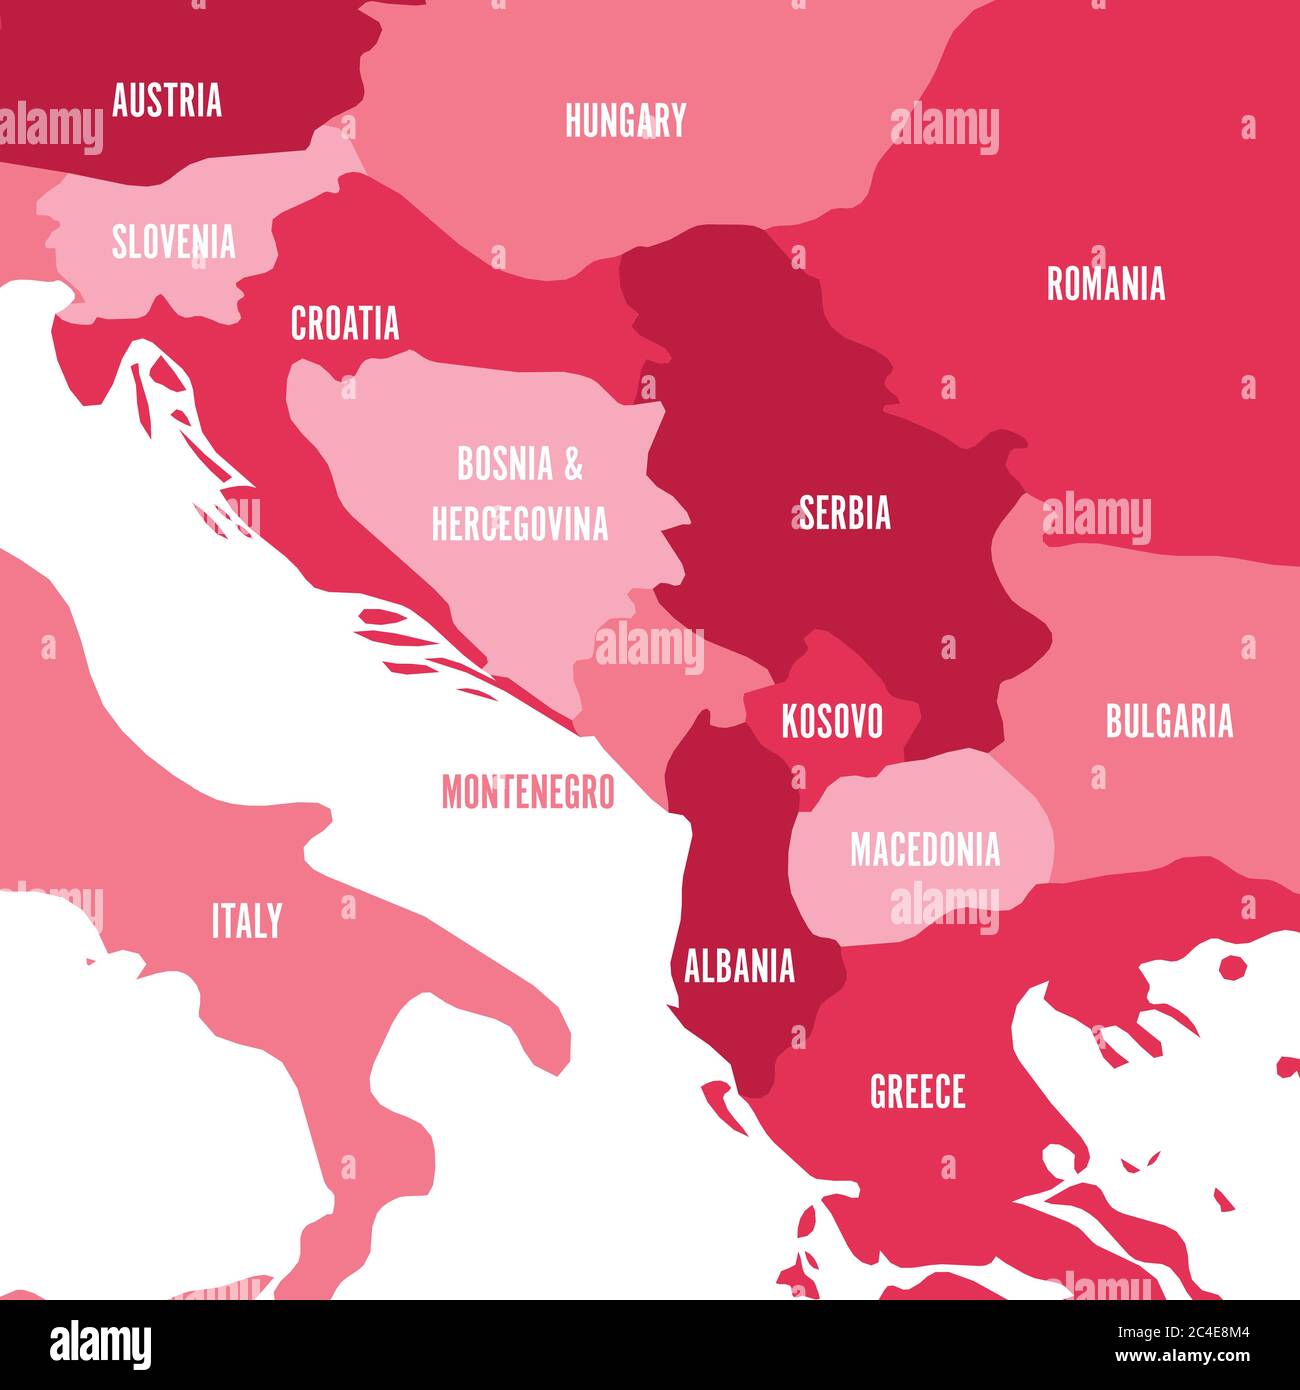 Politische Landkarte des Balkans - Staaten der Balkanhalbinsel. Vier Schattierungen von rosa Vektor-Illustration. Stock Vektor